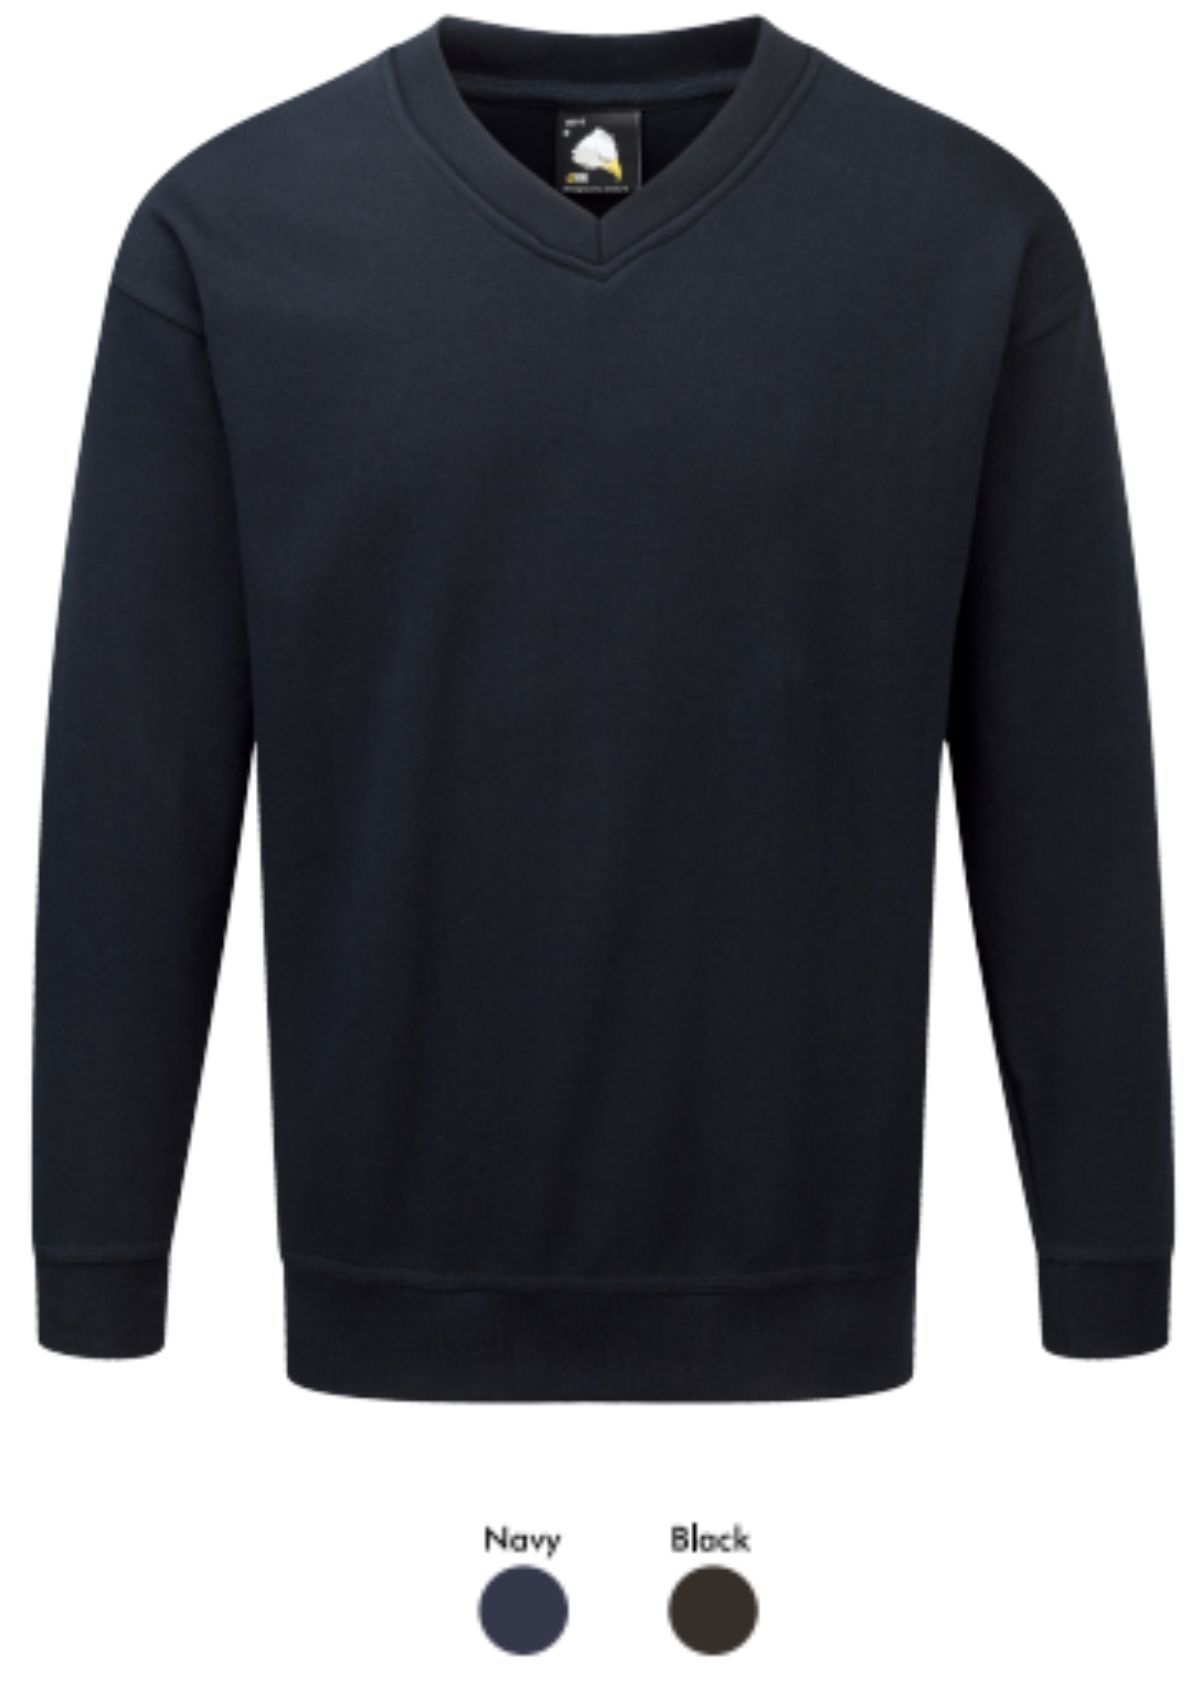 Orn 1260 Buzzard Premium Vee Neck Sweatshirt